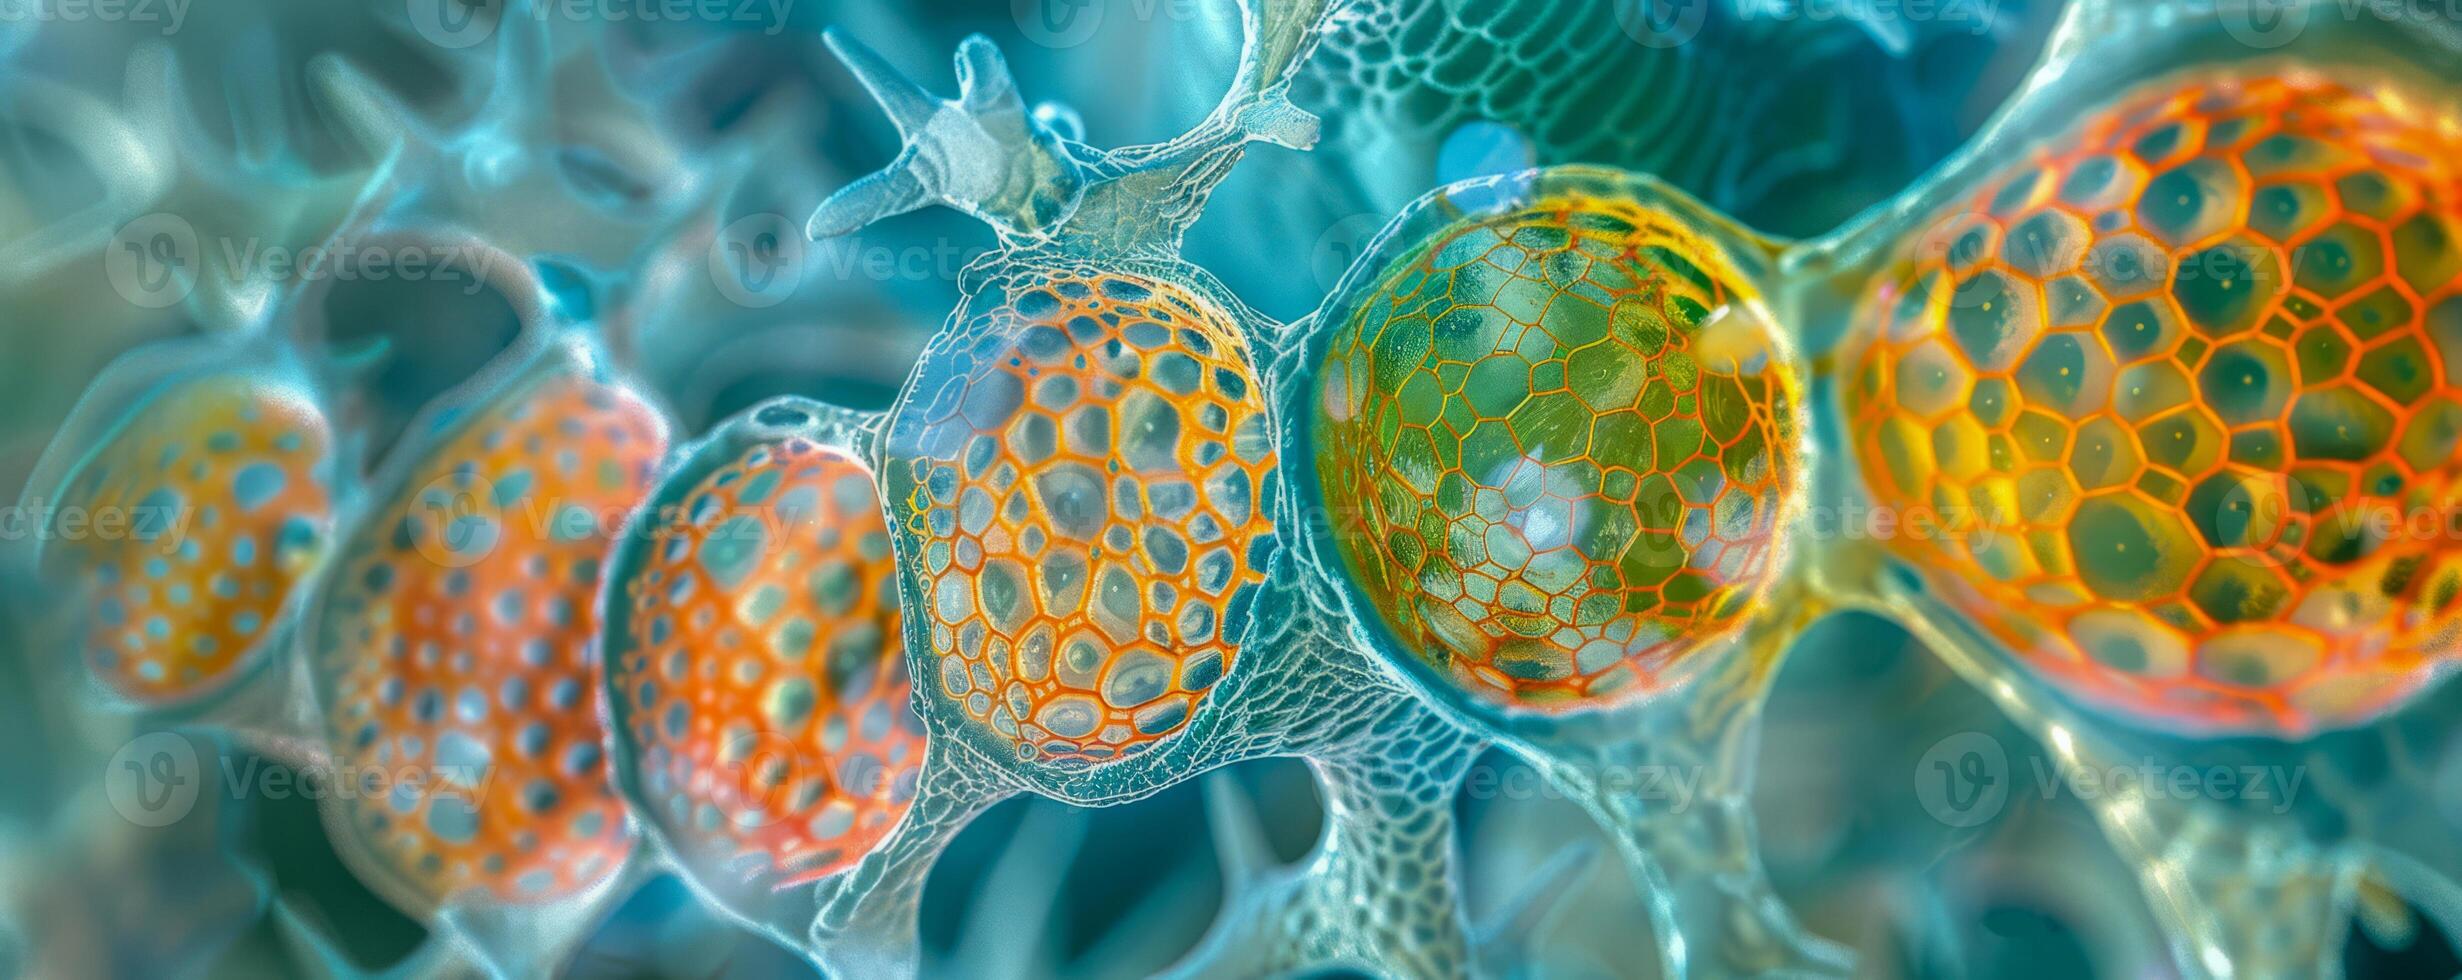 färgrik abstrakt mikrobiell celler under en mikroskop foto